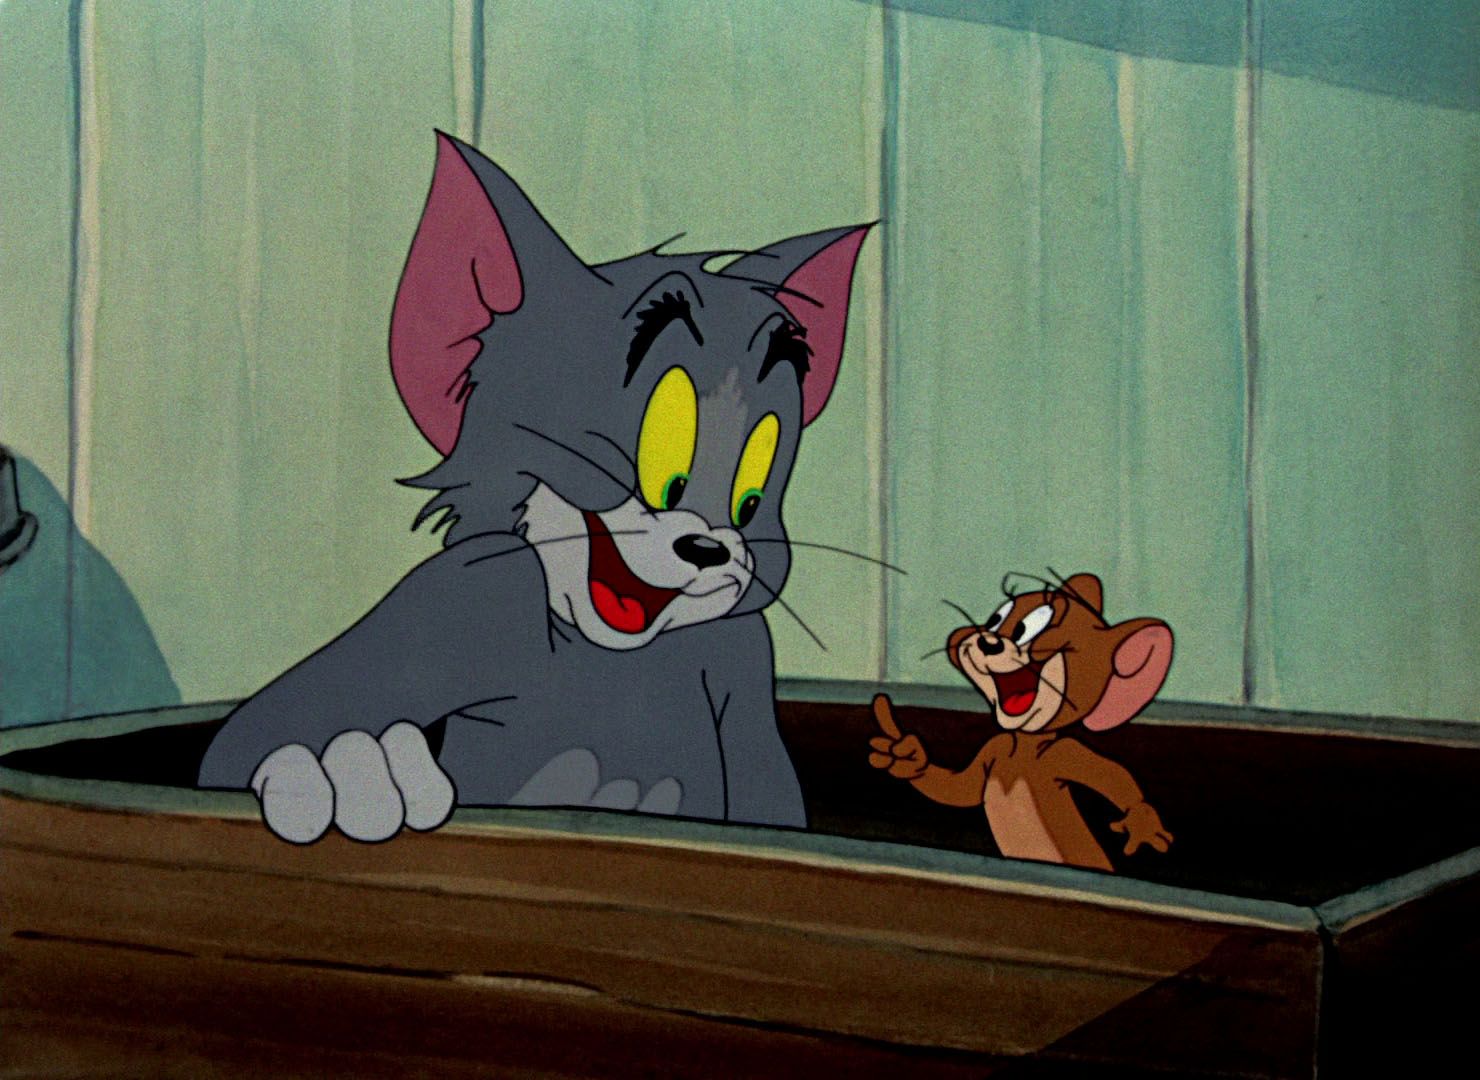 В каком году вышел том и джерри. Том и Джерри 1960. Том и Джерри (Tom and Jerry) 1940. Том и Джерри 1996.